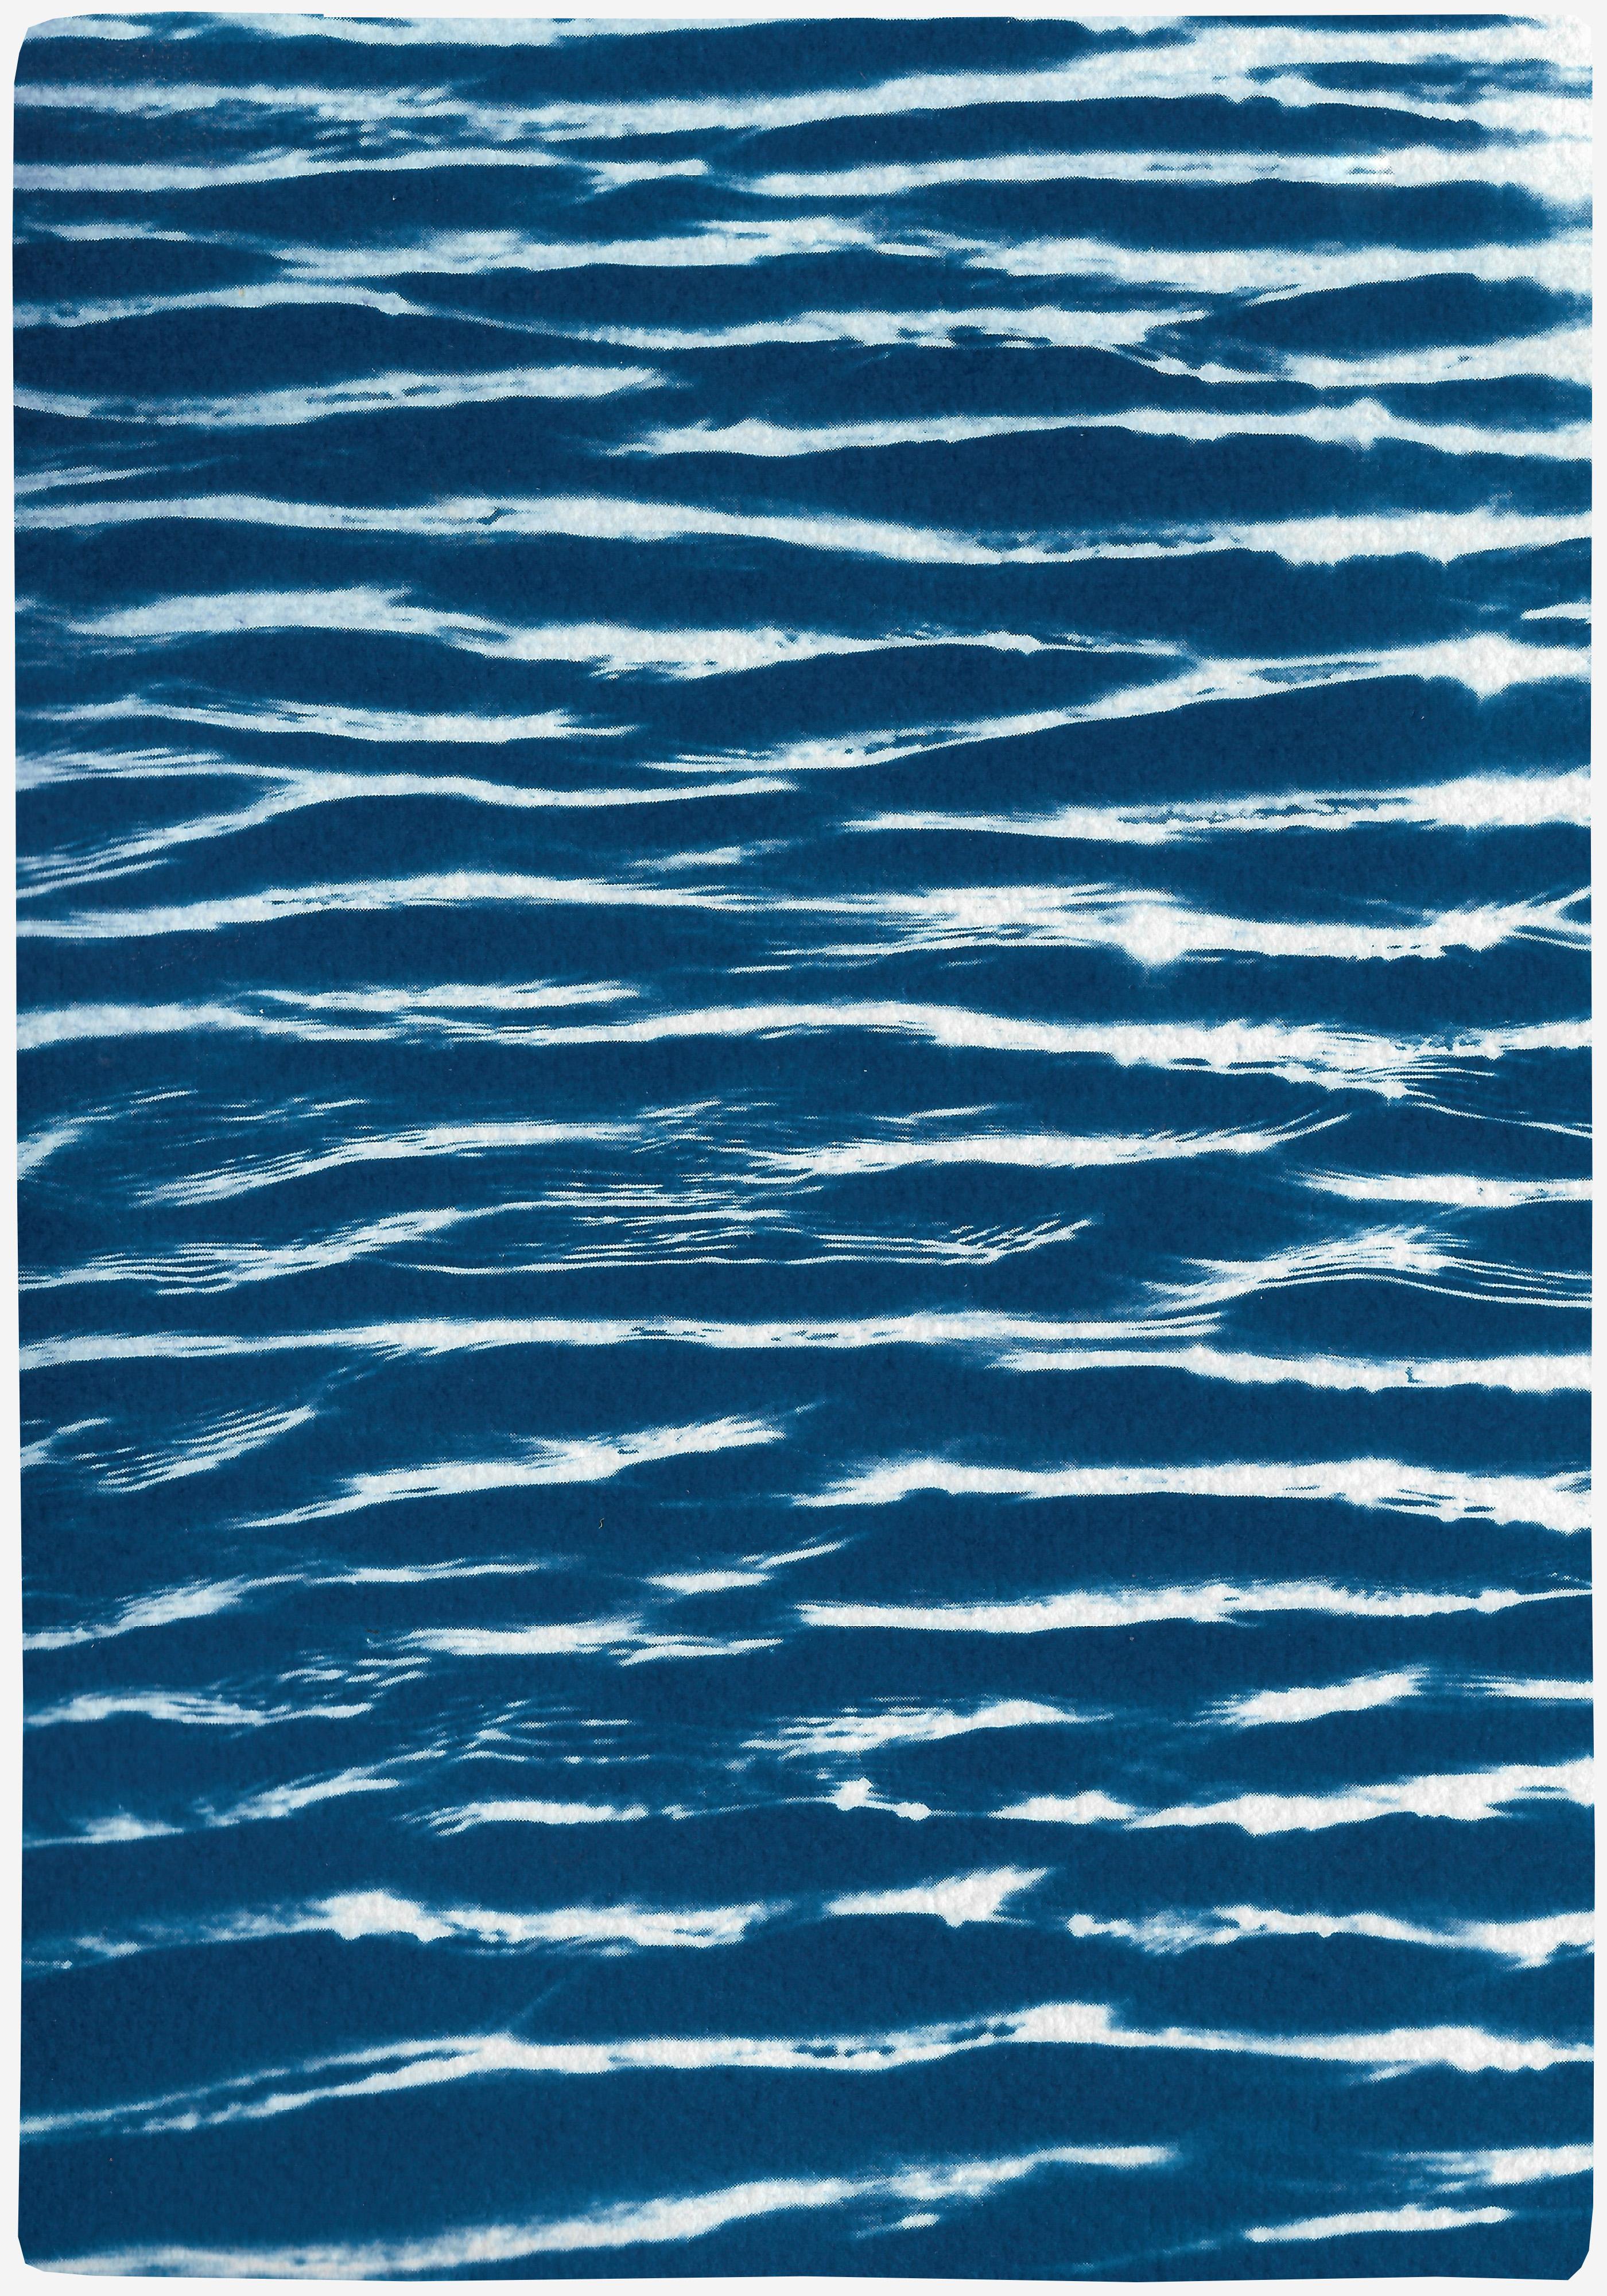 Patterns à l'aquarelle Tranquil, cyanotype contemporain de grande taille sur papier aquarelle - Bleu Landscape Art par Kind of Cyan